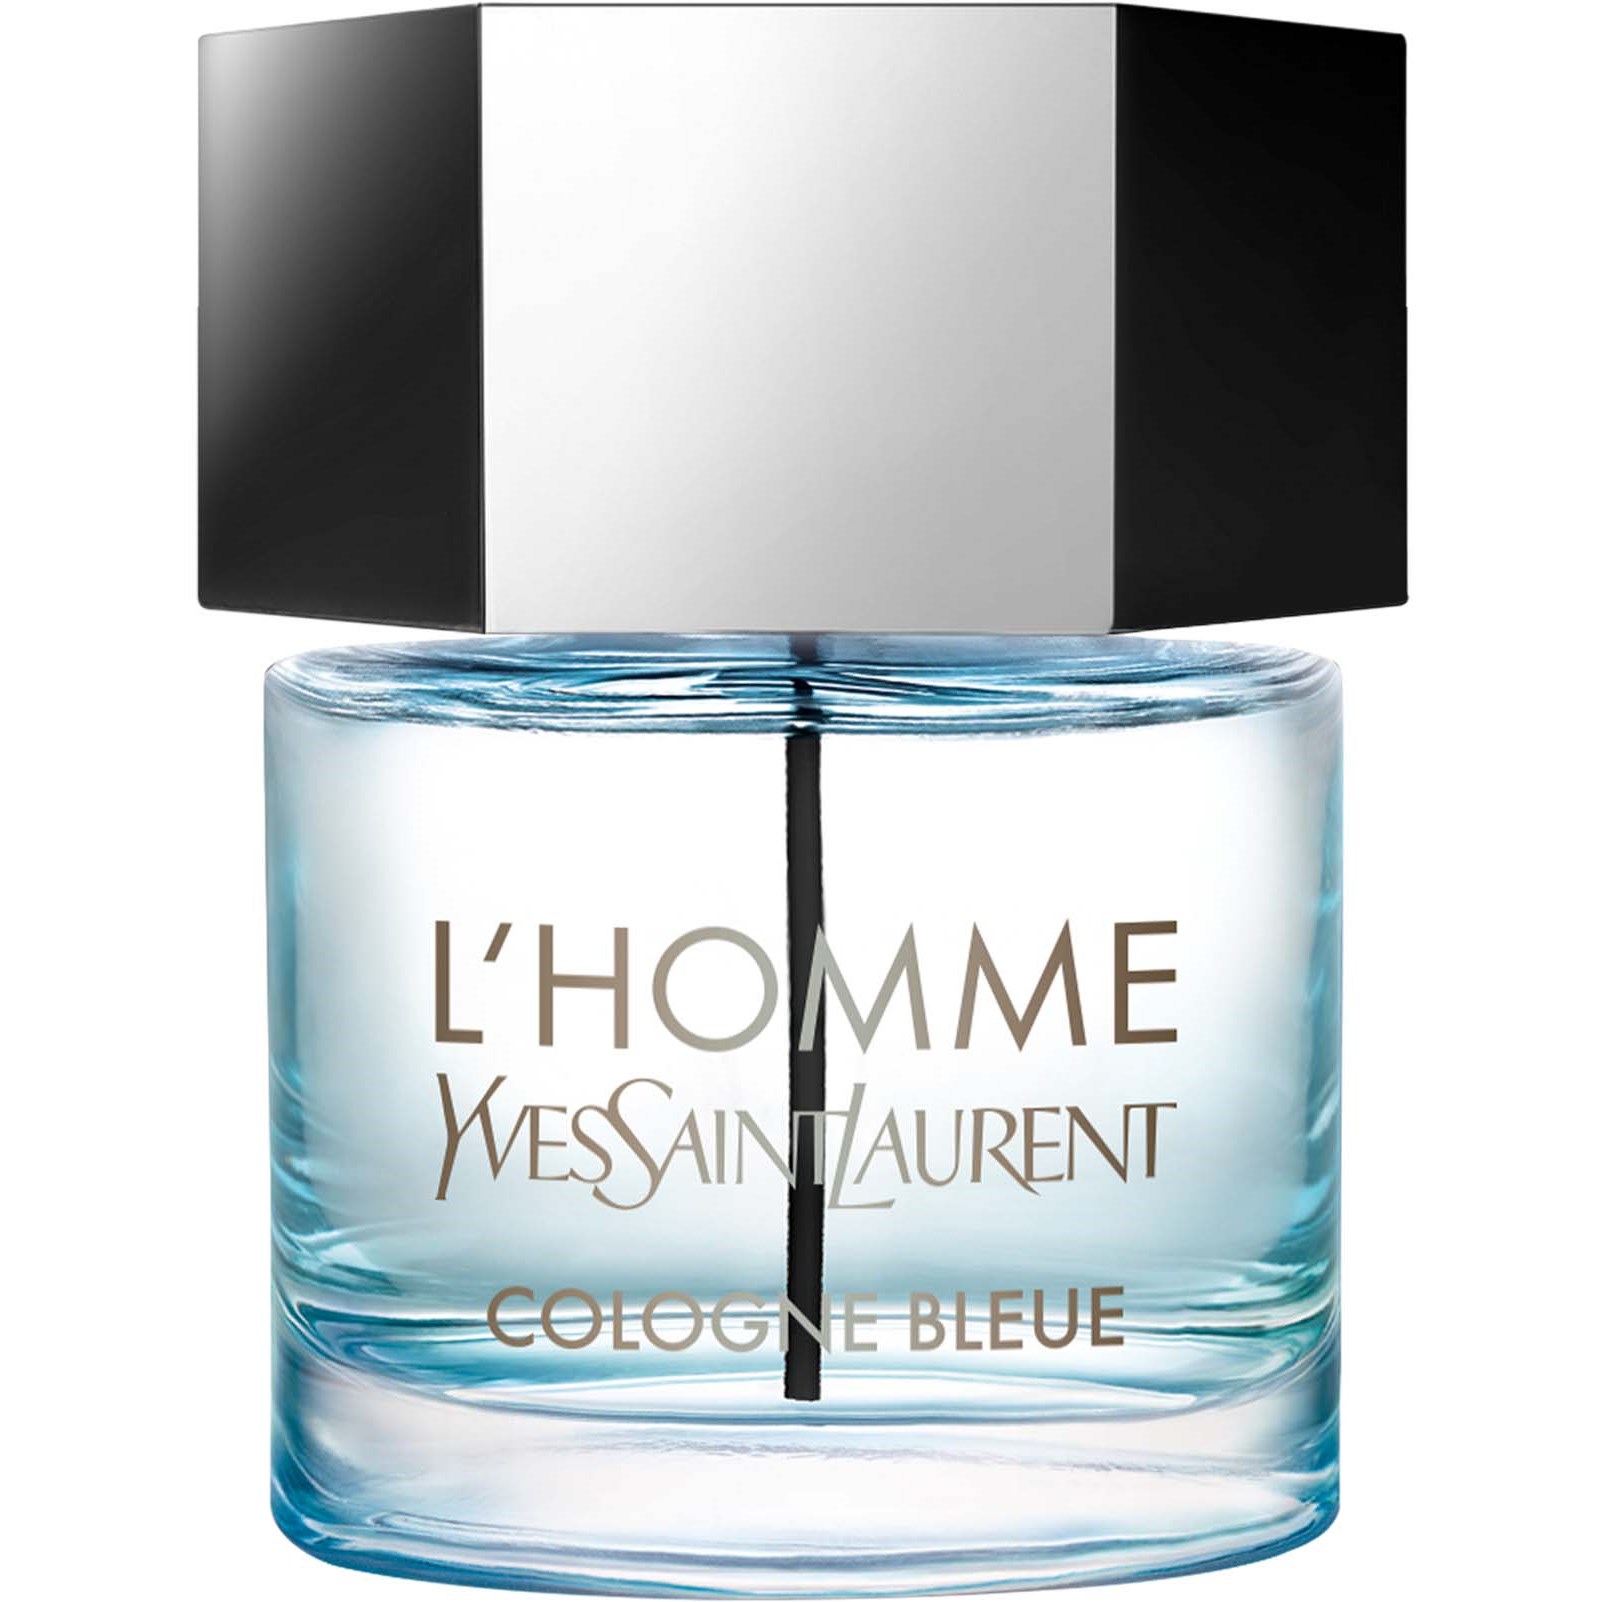 Läs mer om Yves Saint Laurent LHomme Cologne Bleue 60 ml